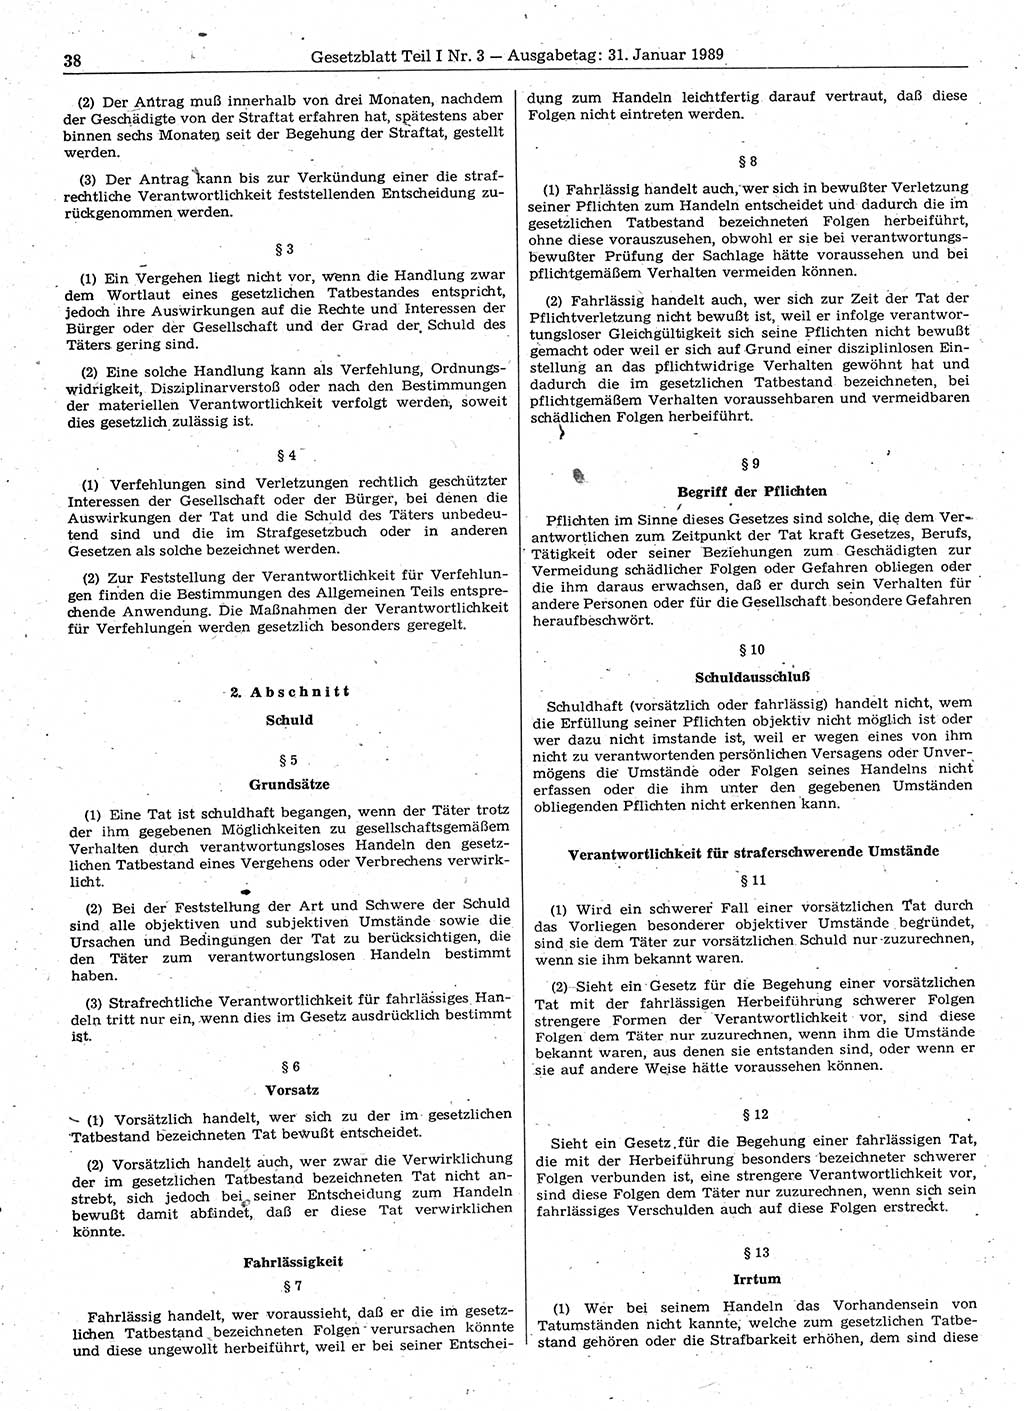 Gesetzblatt (GBl.) der Deutschen Demokratischen Republik (DDR) Teil Ⅰ 1989, Seite 38 (GBl. DDR Ⅰ 1989, S. 38)